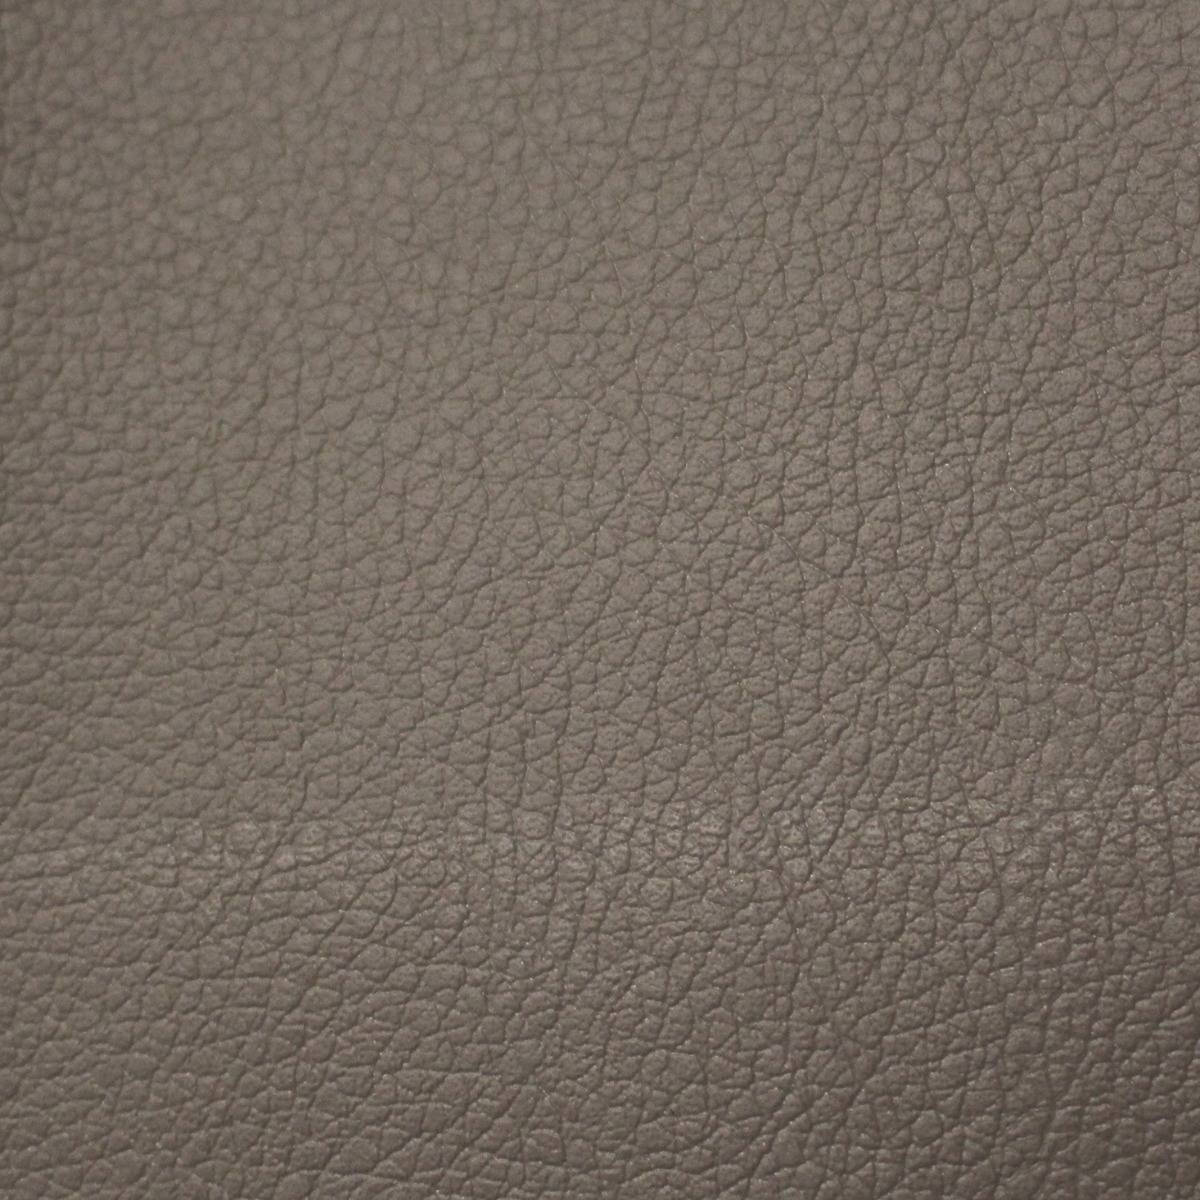 Honda Quartz Leather